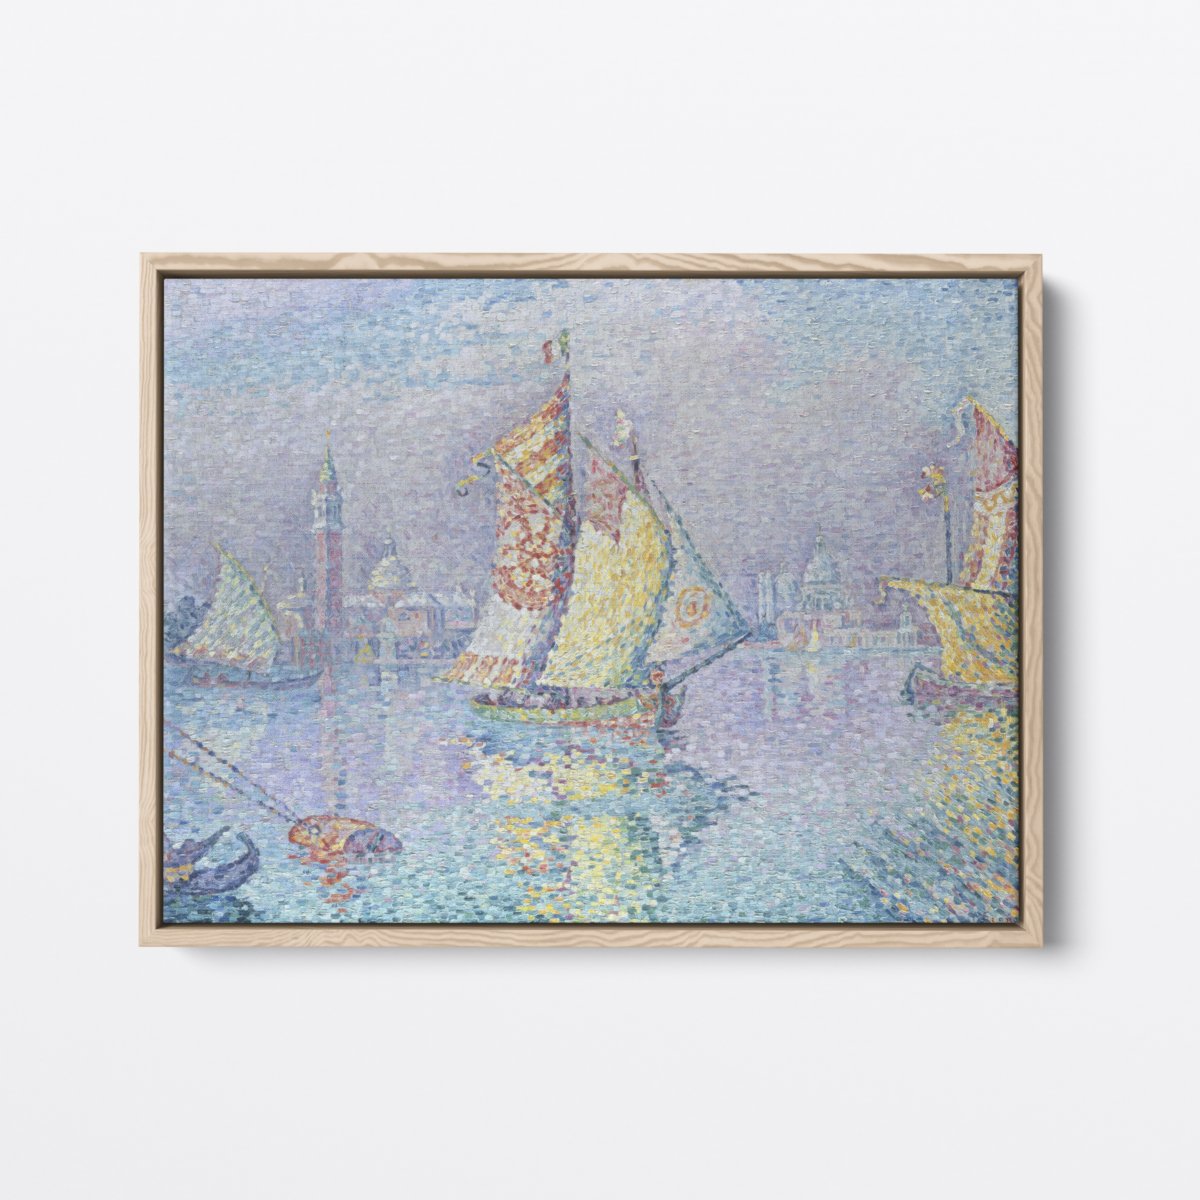 Decorated Sails | Paul Signac | Ave Legato | Canvas Art Prints | Vintage Artwork